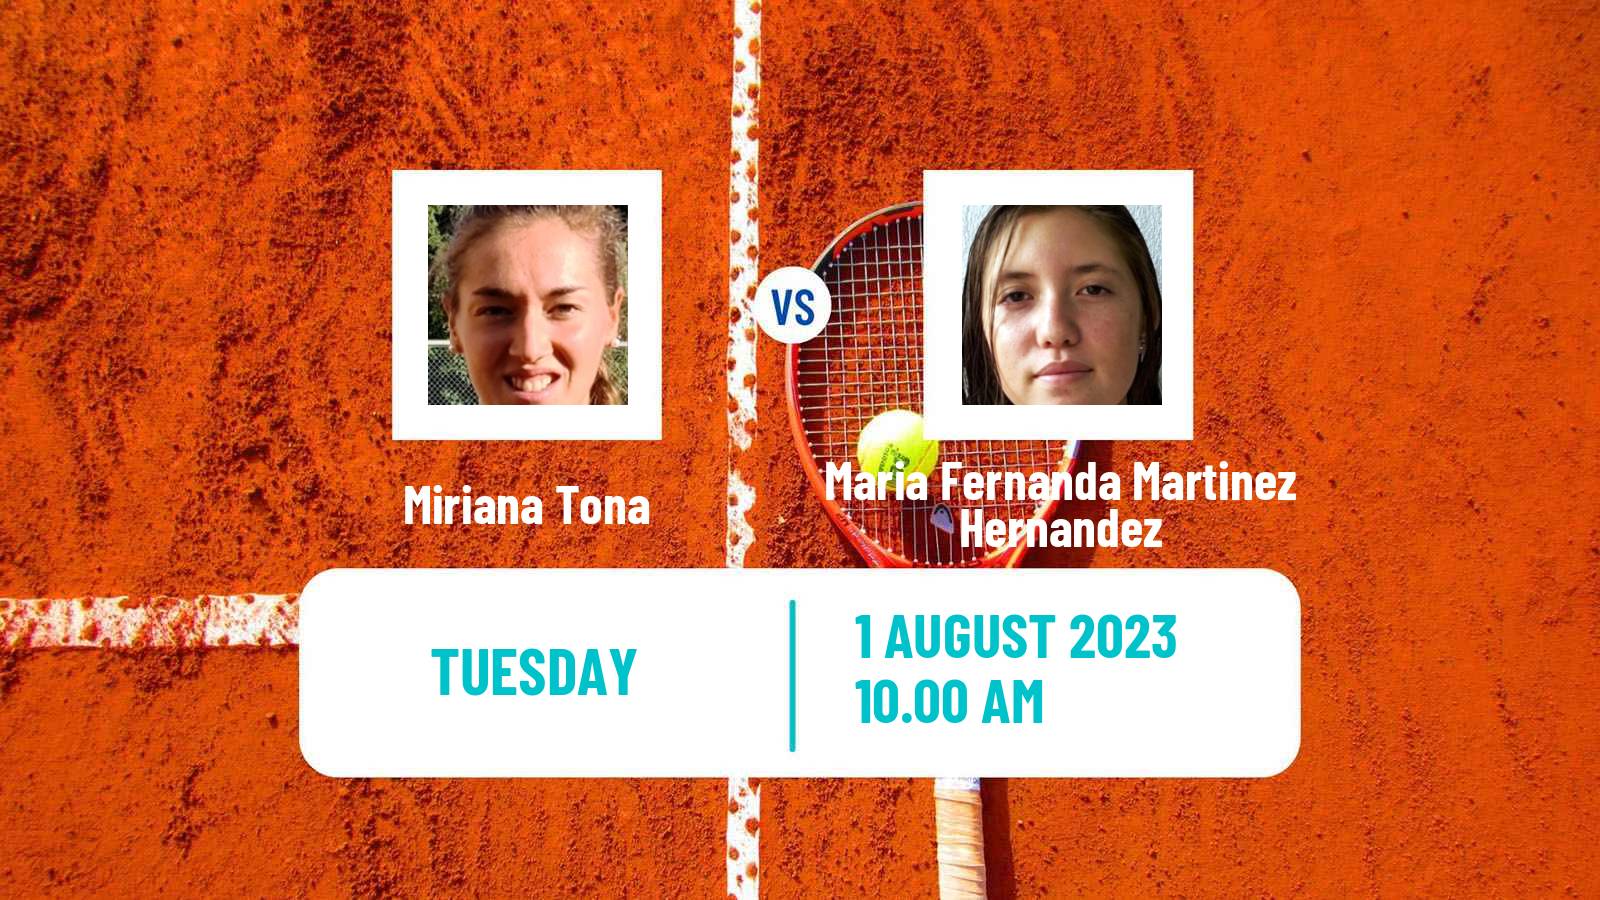 Tennis ITF W25 Junin Women Miriana Tona - Maria Fernanda Martinez Hernandez